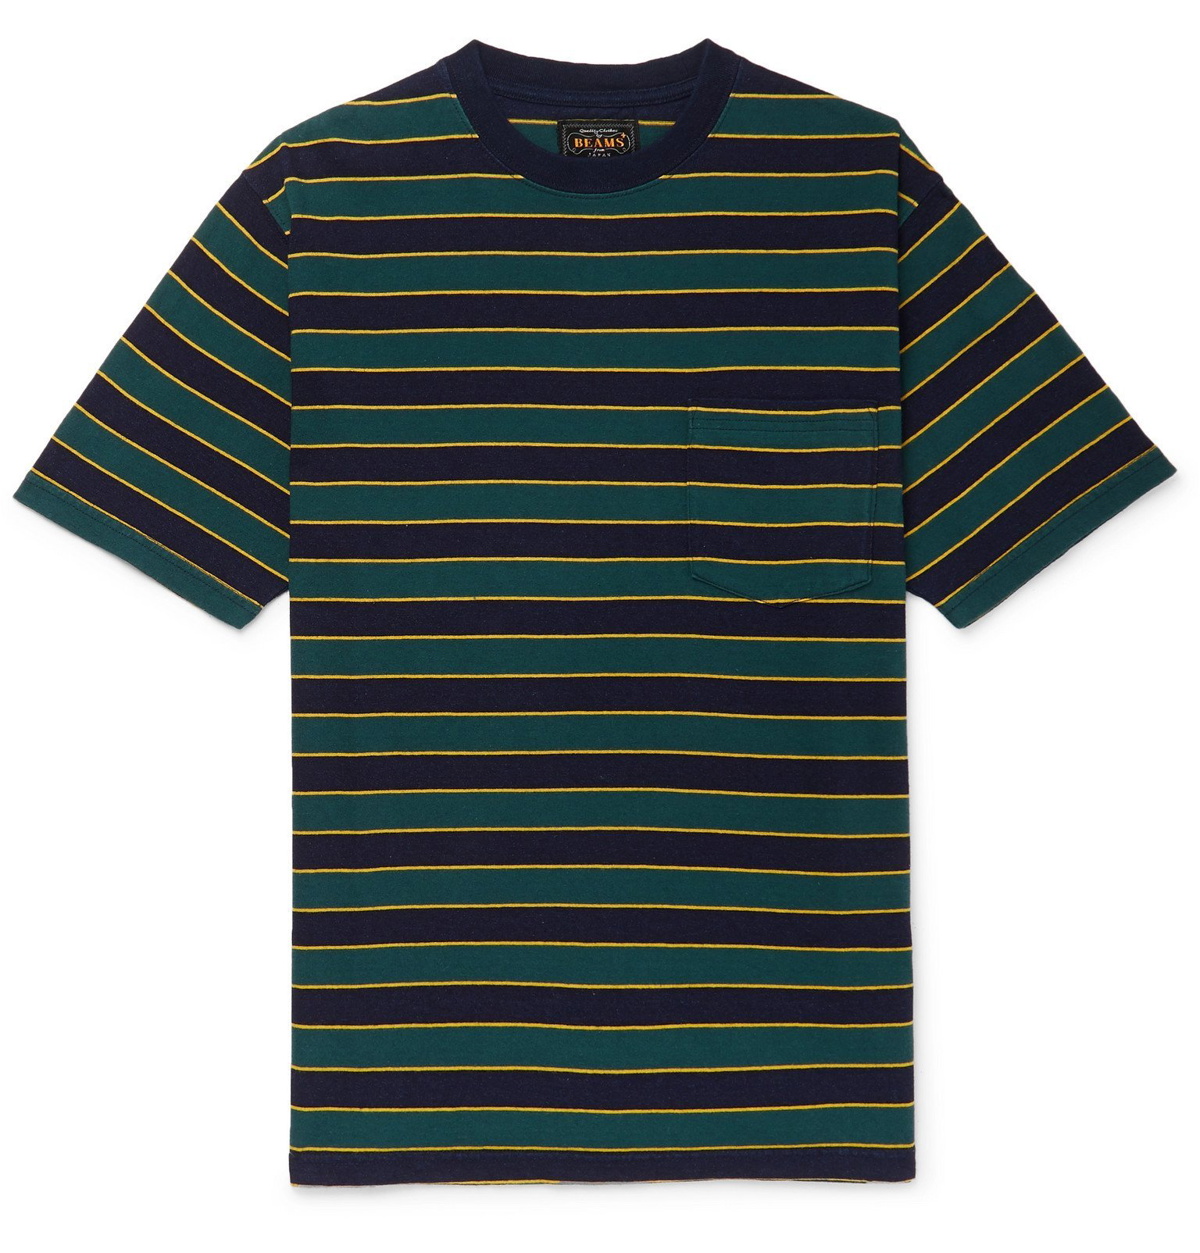 Beams Plus - Striped Cotton-Jersey T-Shirt - Green Beams Plus